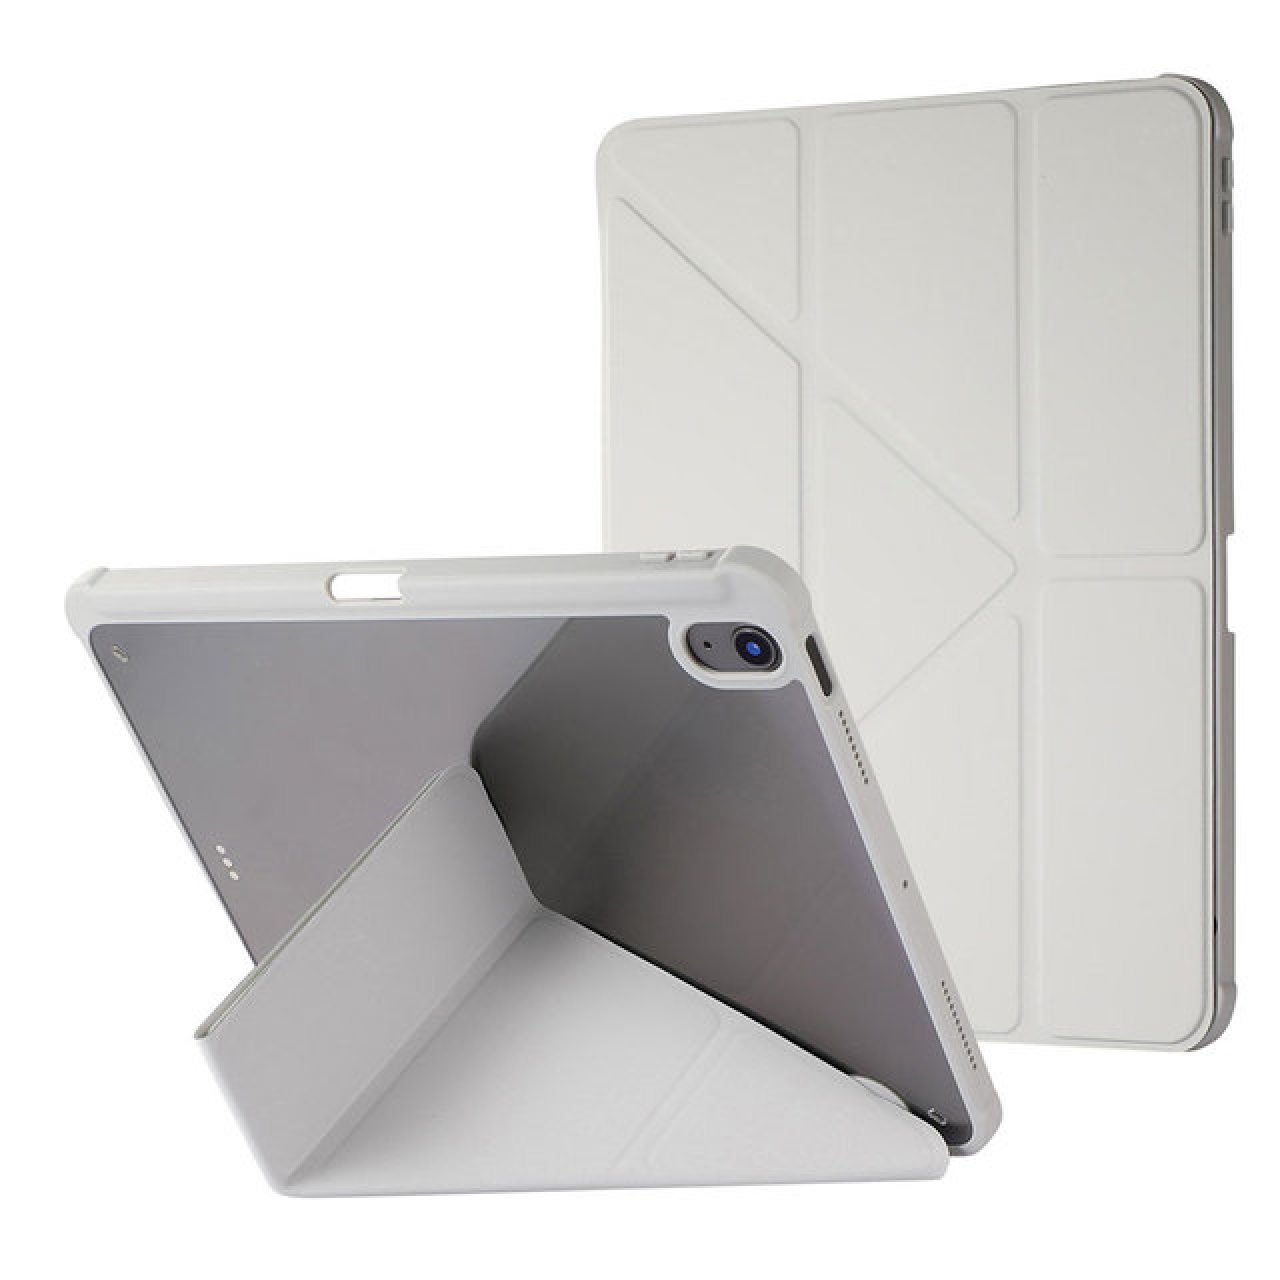 Θήκη Τάμπλετ Μαγνητική Apple iPad 7-8-9  10.2 inch με Προστασία Κάμερας και Θέση για Γραφίδα -Tablet Case - Grey